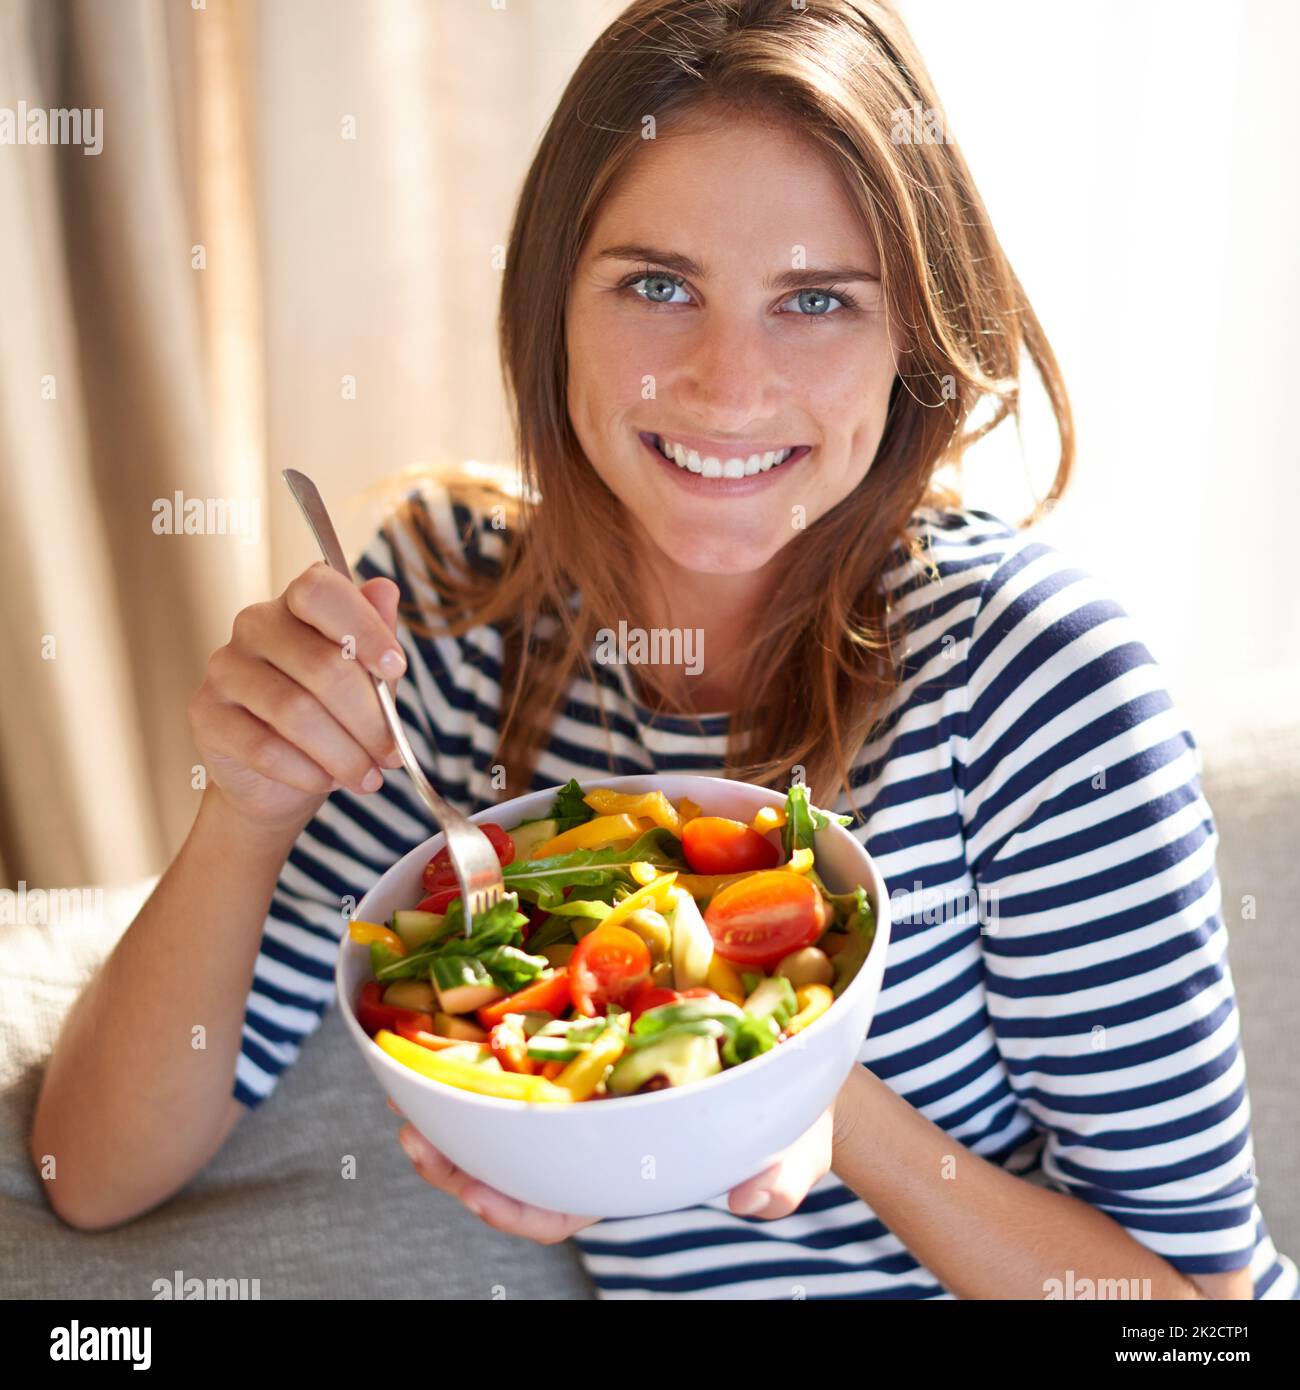 Una vita sana inizia ora. Shot di una giovane donna che mangia una ciotola piena di insalata sul suo divano a casa. Foto Stock